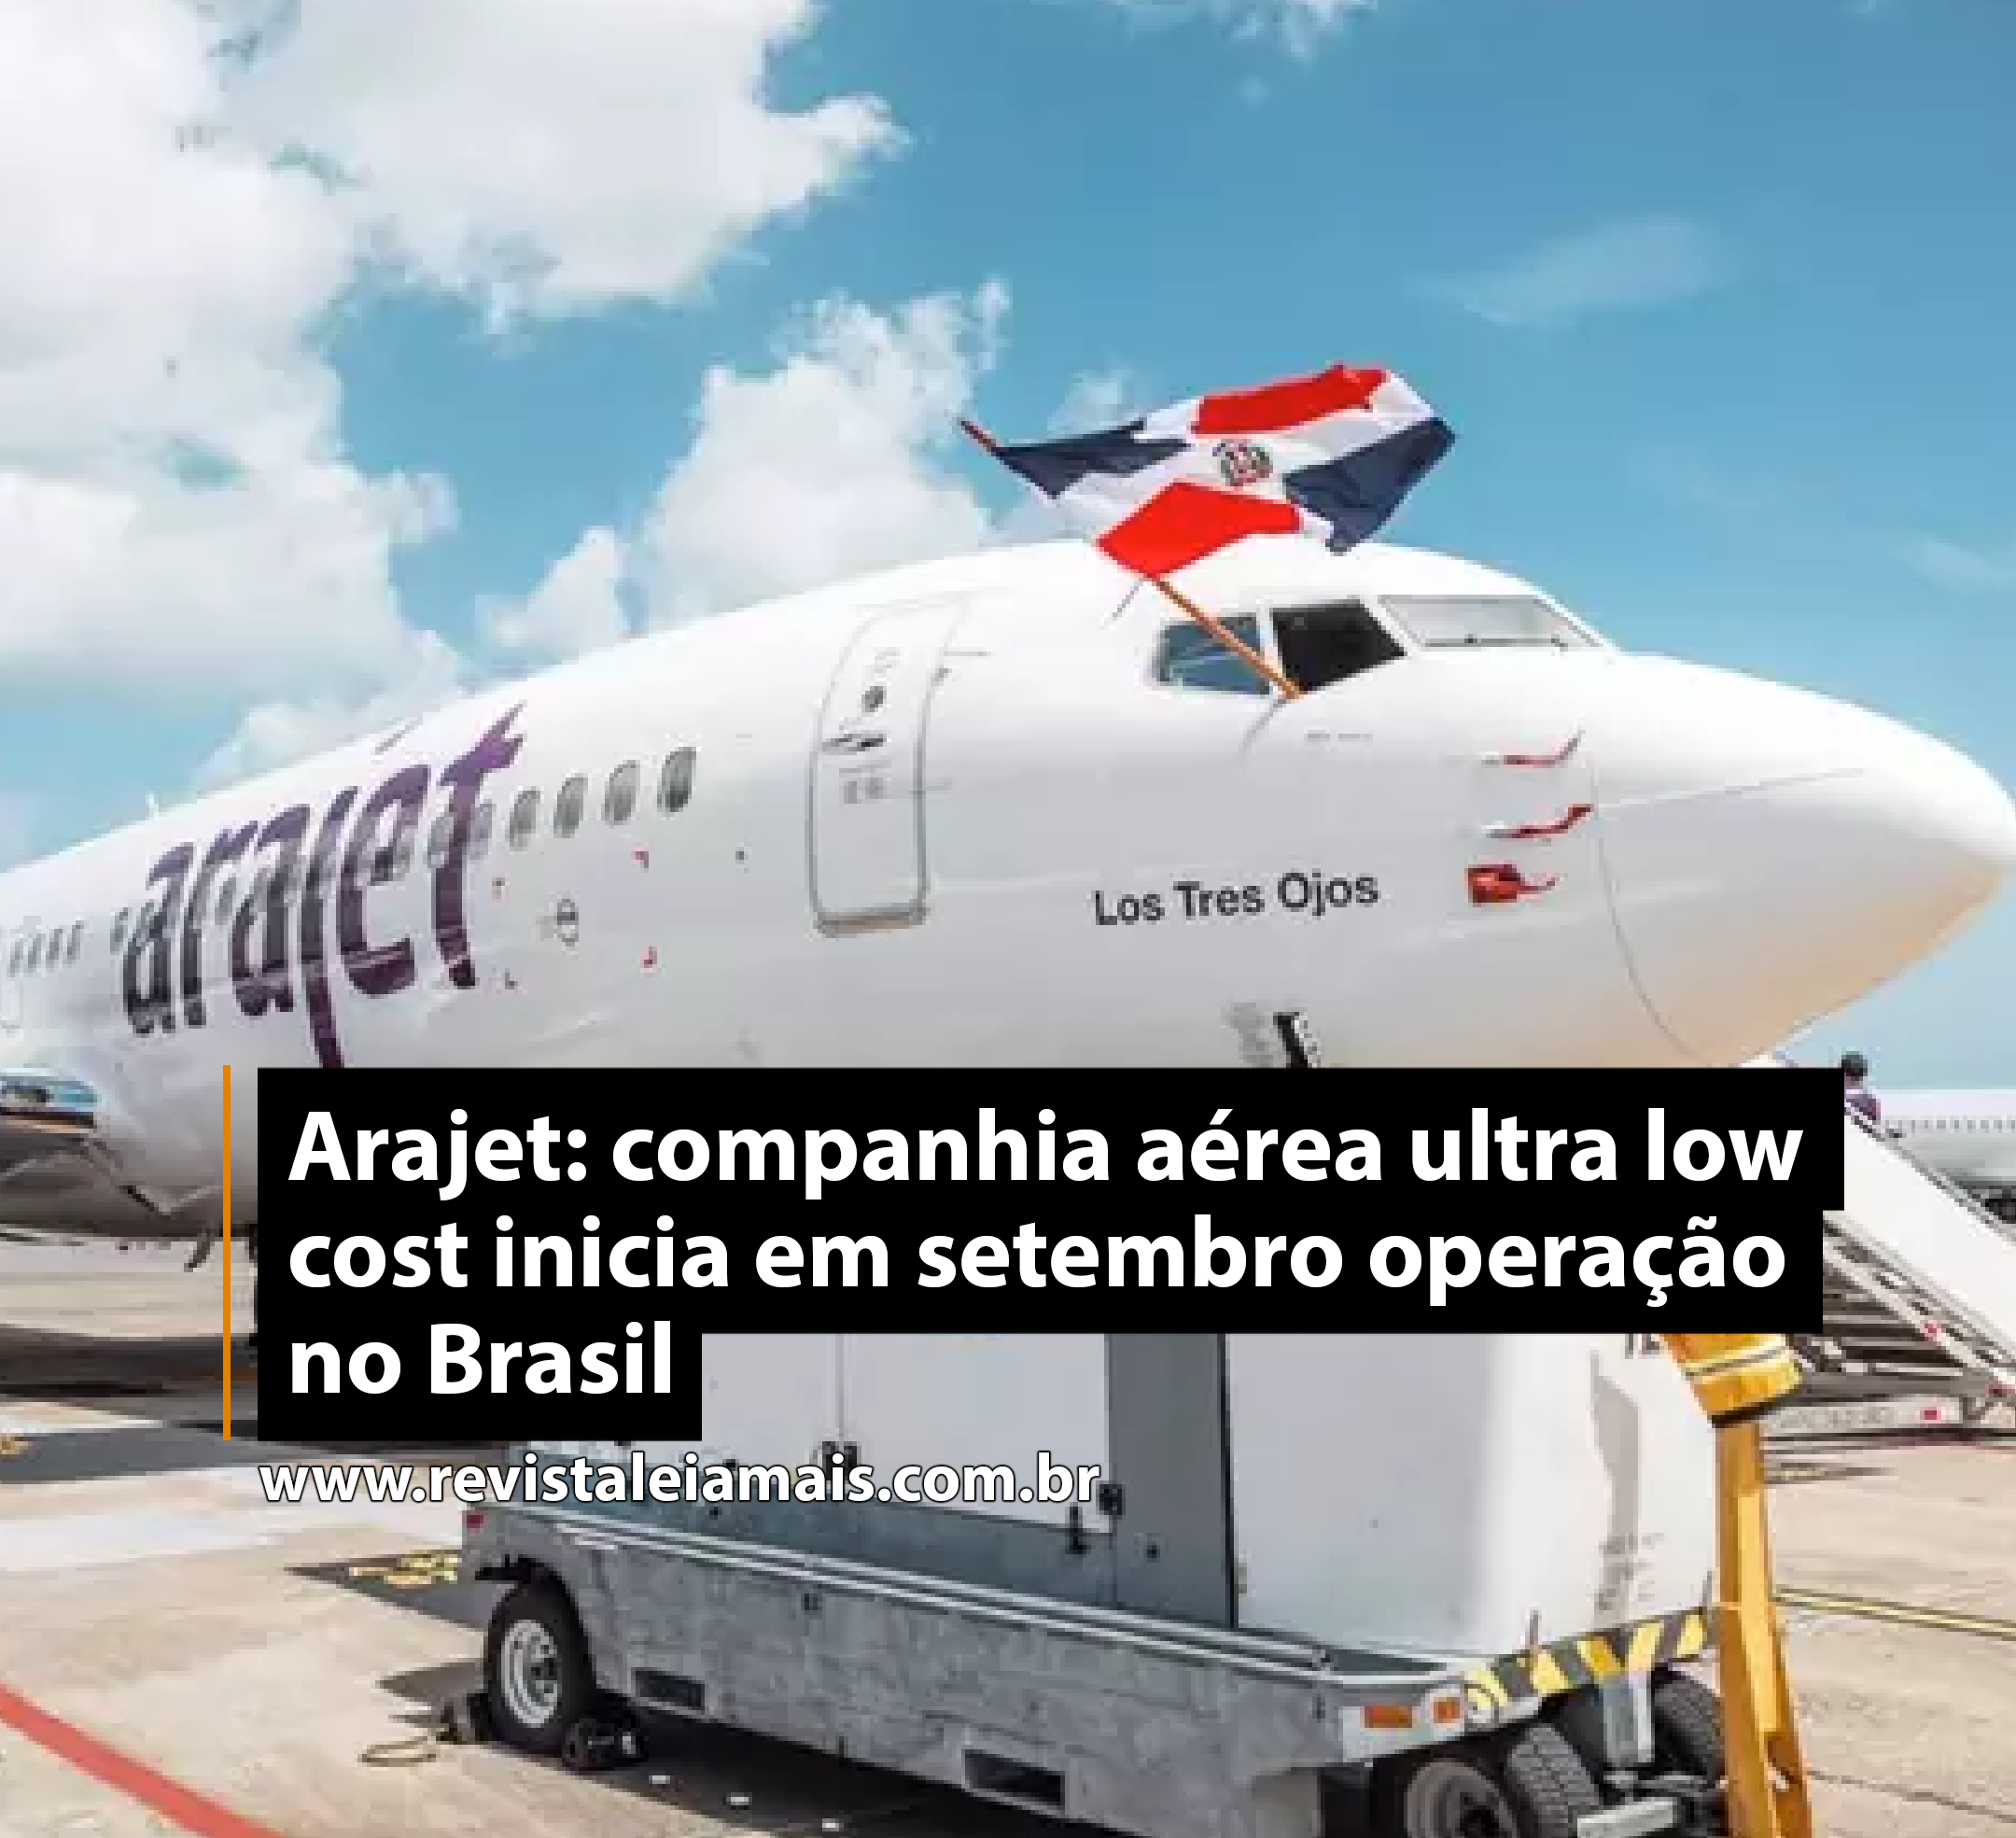 Arajet: companhia aérea ultra low cost inicia em setembro operação no Brasil